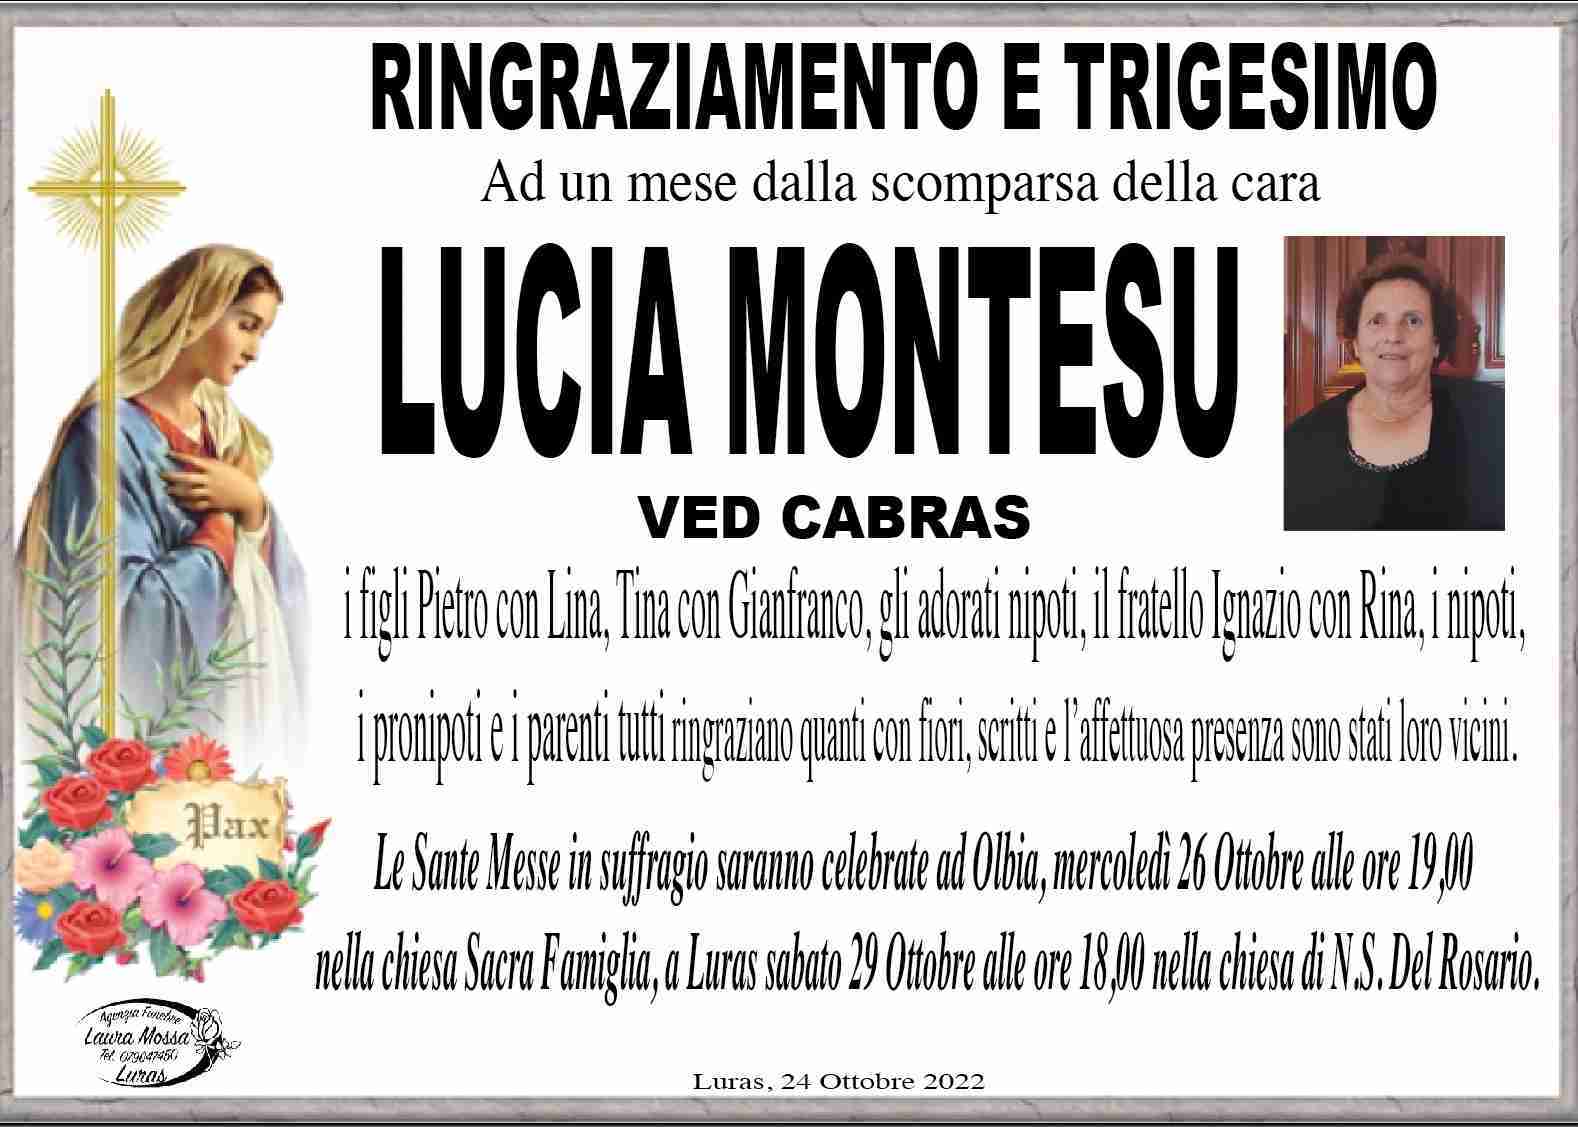 Lucia Montesu